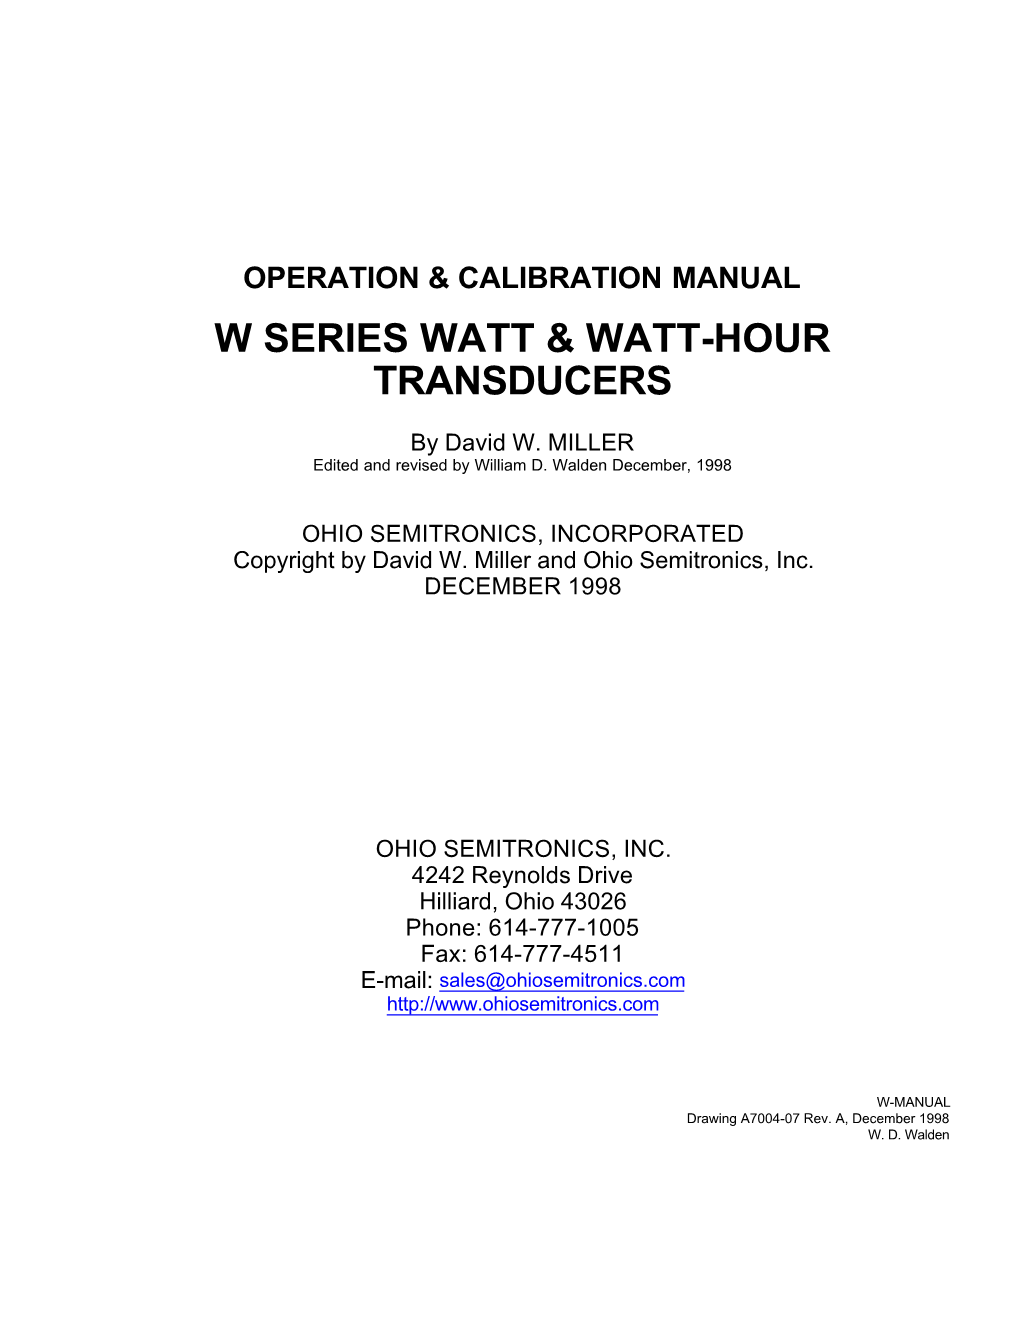 W Series Watt & Watt-Hour Transducers